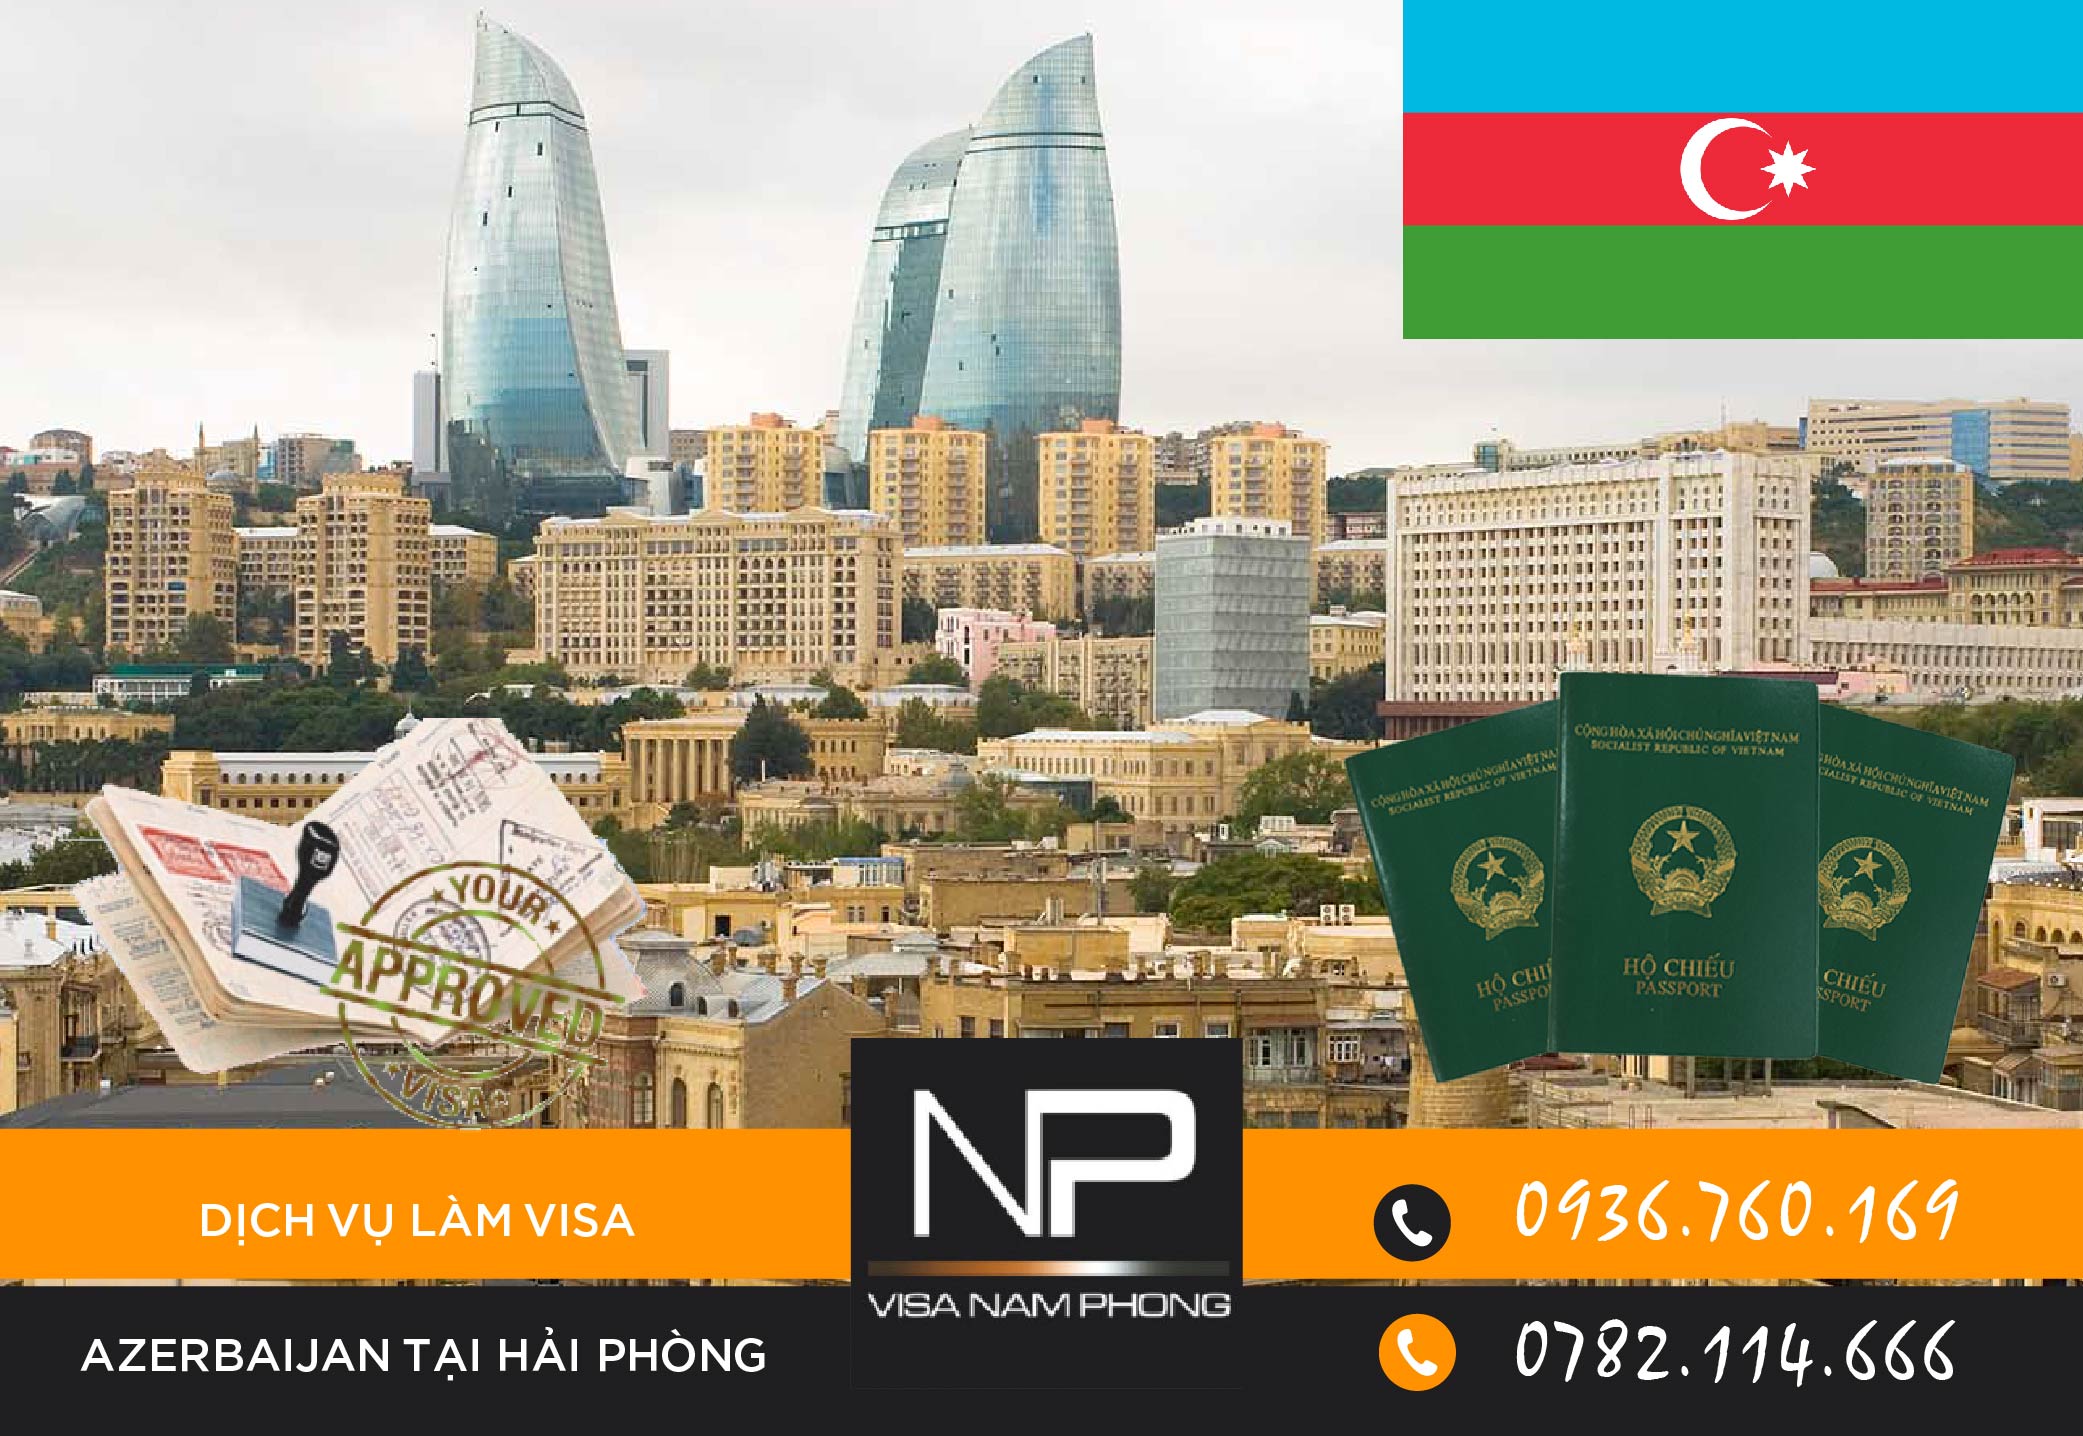 Dịch vụ làm visa Azerbaijan tại Hải Phòng